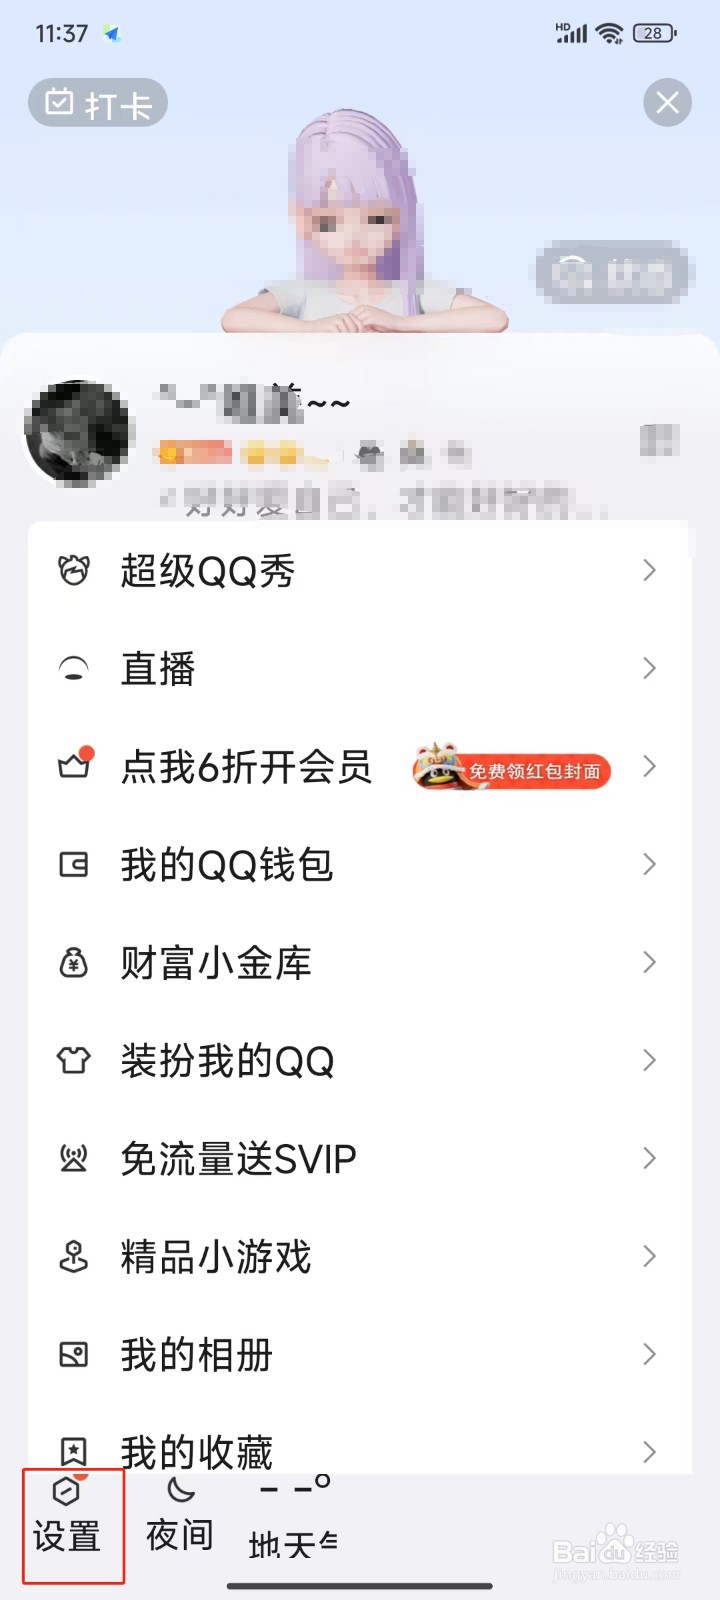 QQ中怎样关闭群互动标识